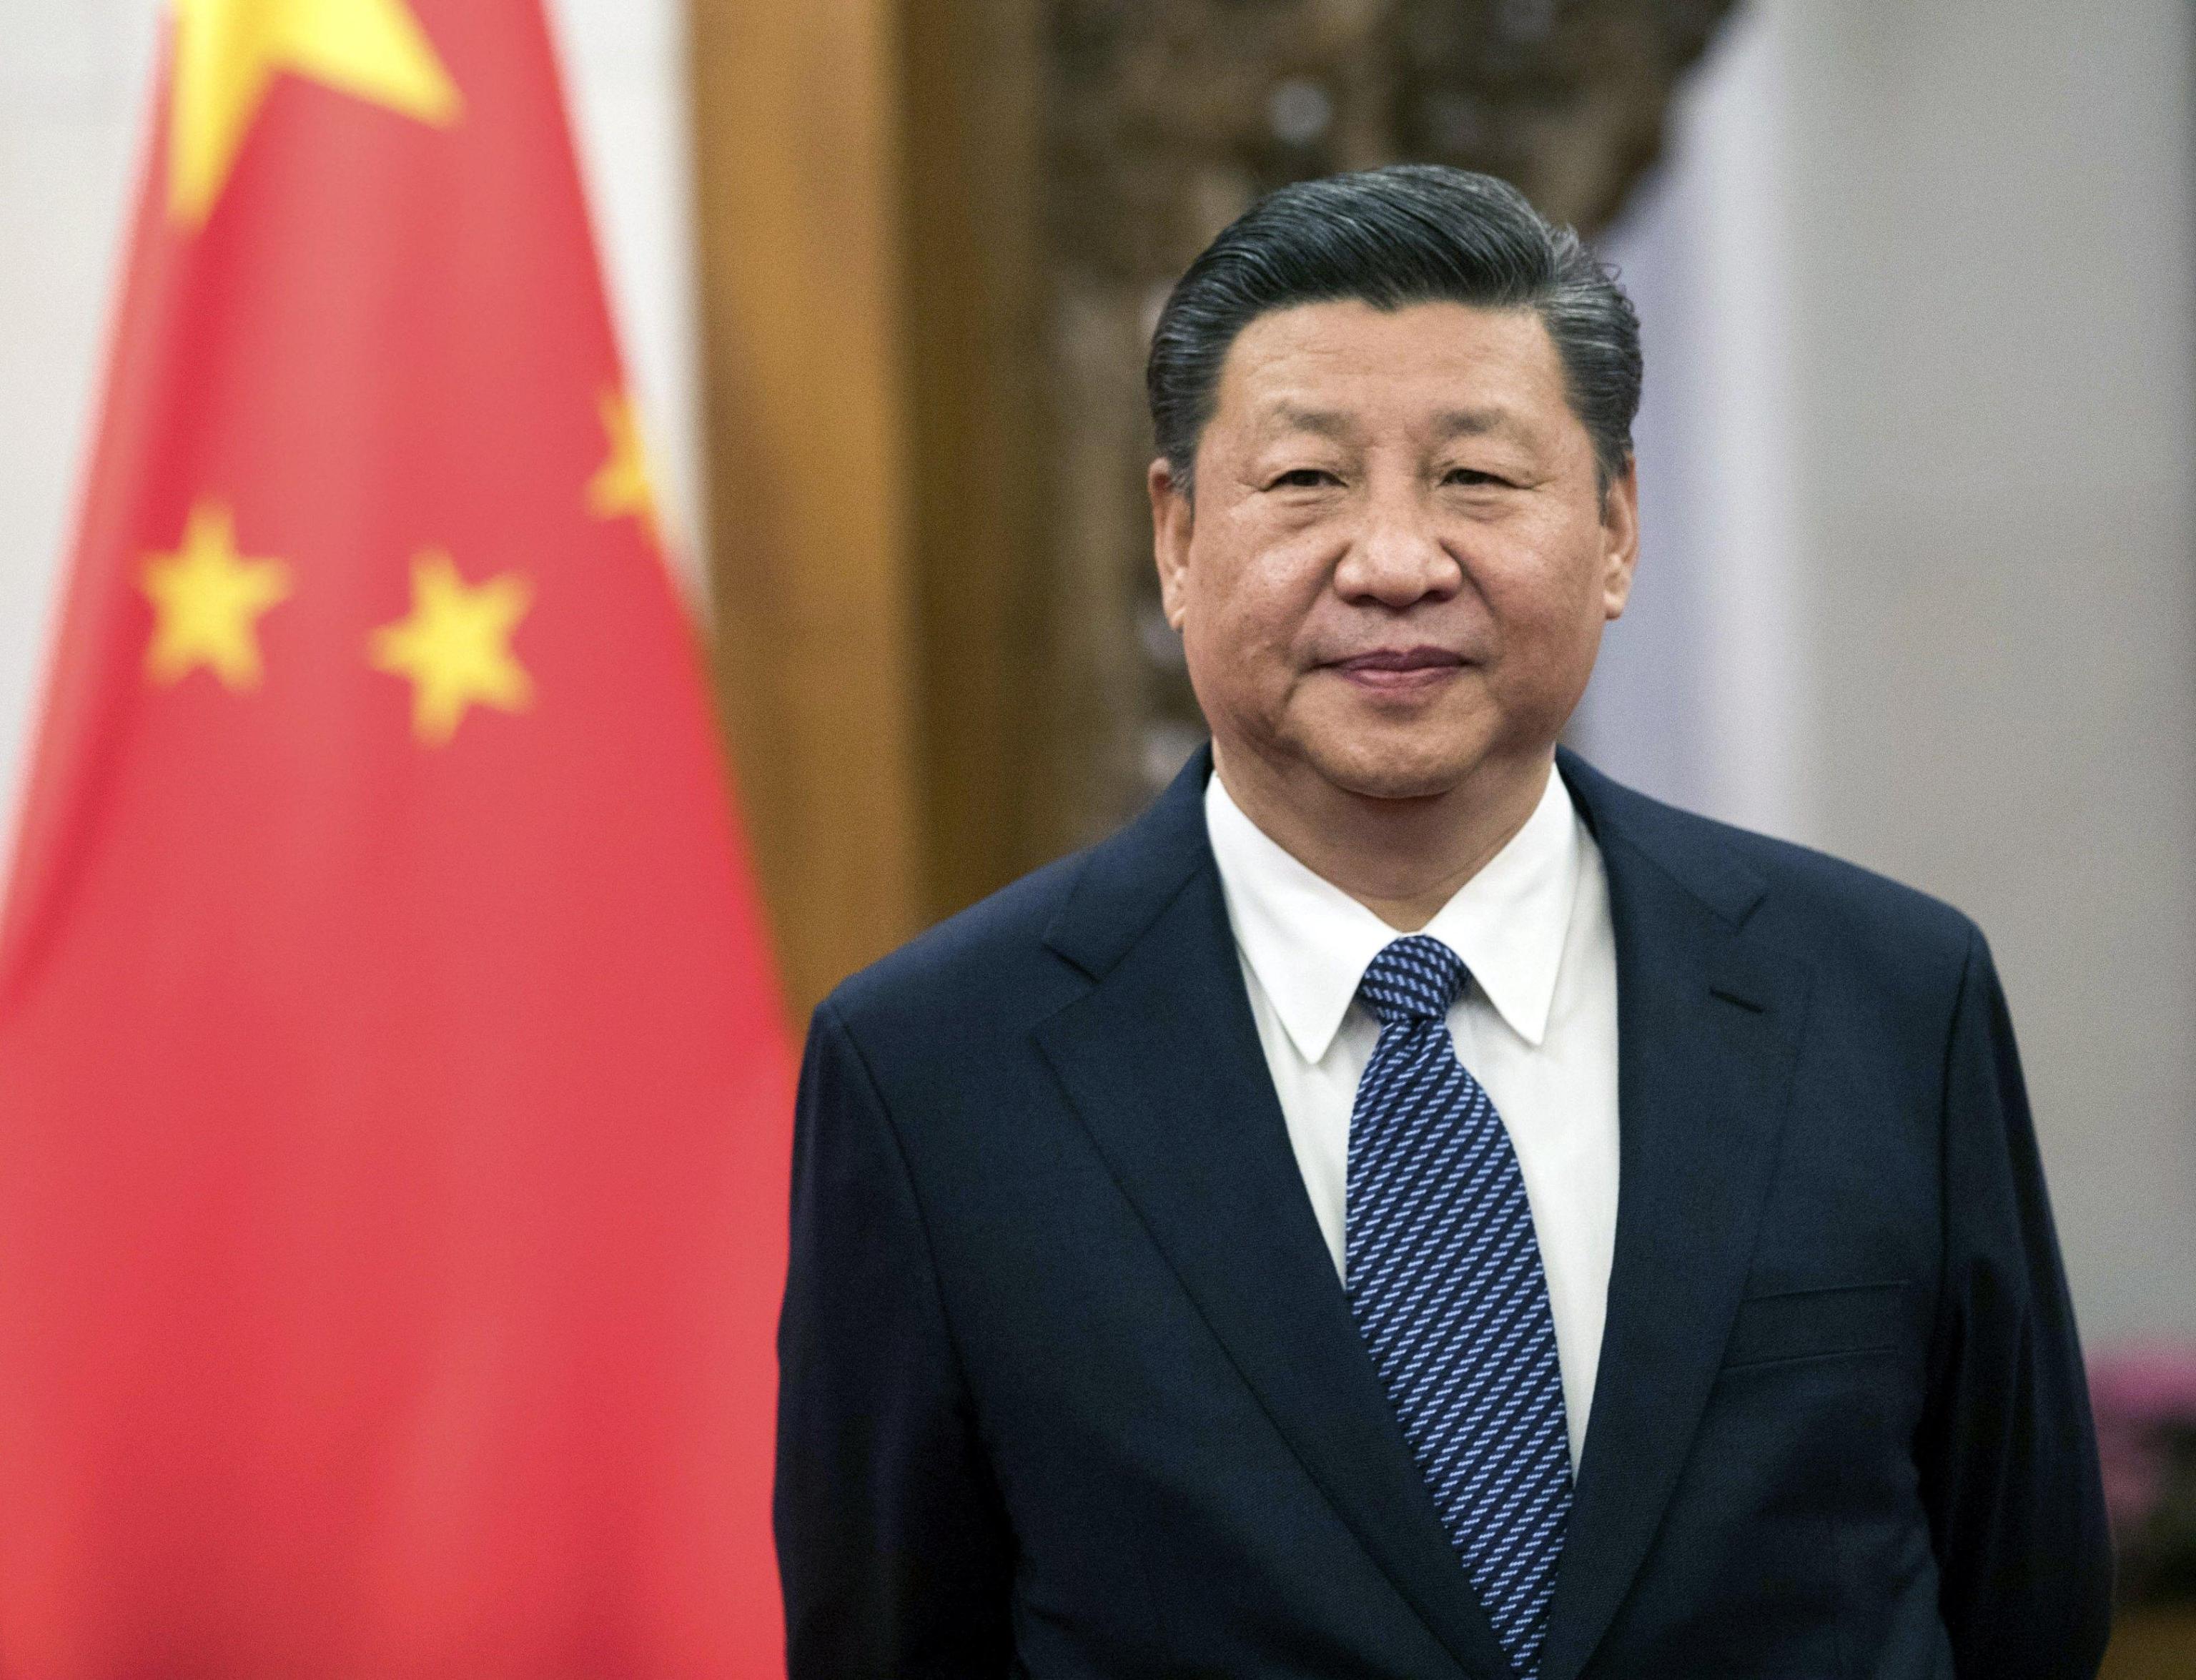 Xi Jinping ha vinto il Premio intitolato a Cesare Pavese. Imbarazzo a corte. Anche la letteratura italiana s’inchina – con grottesca giustificazione – al cospetto del Presidente Cinese